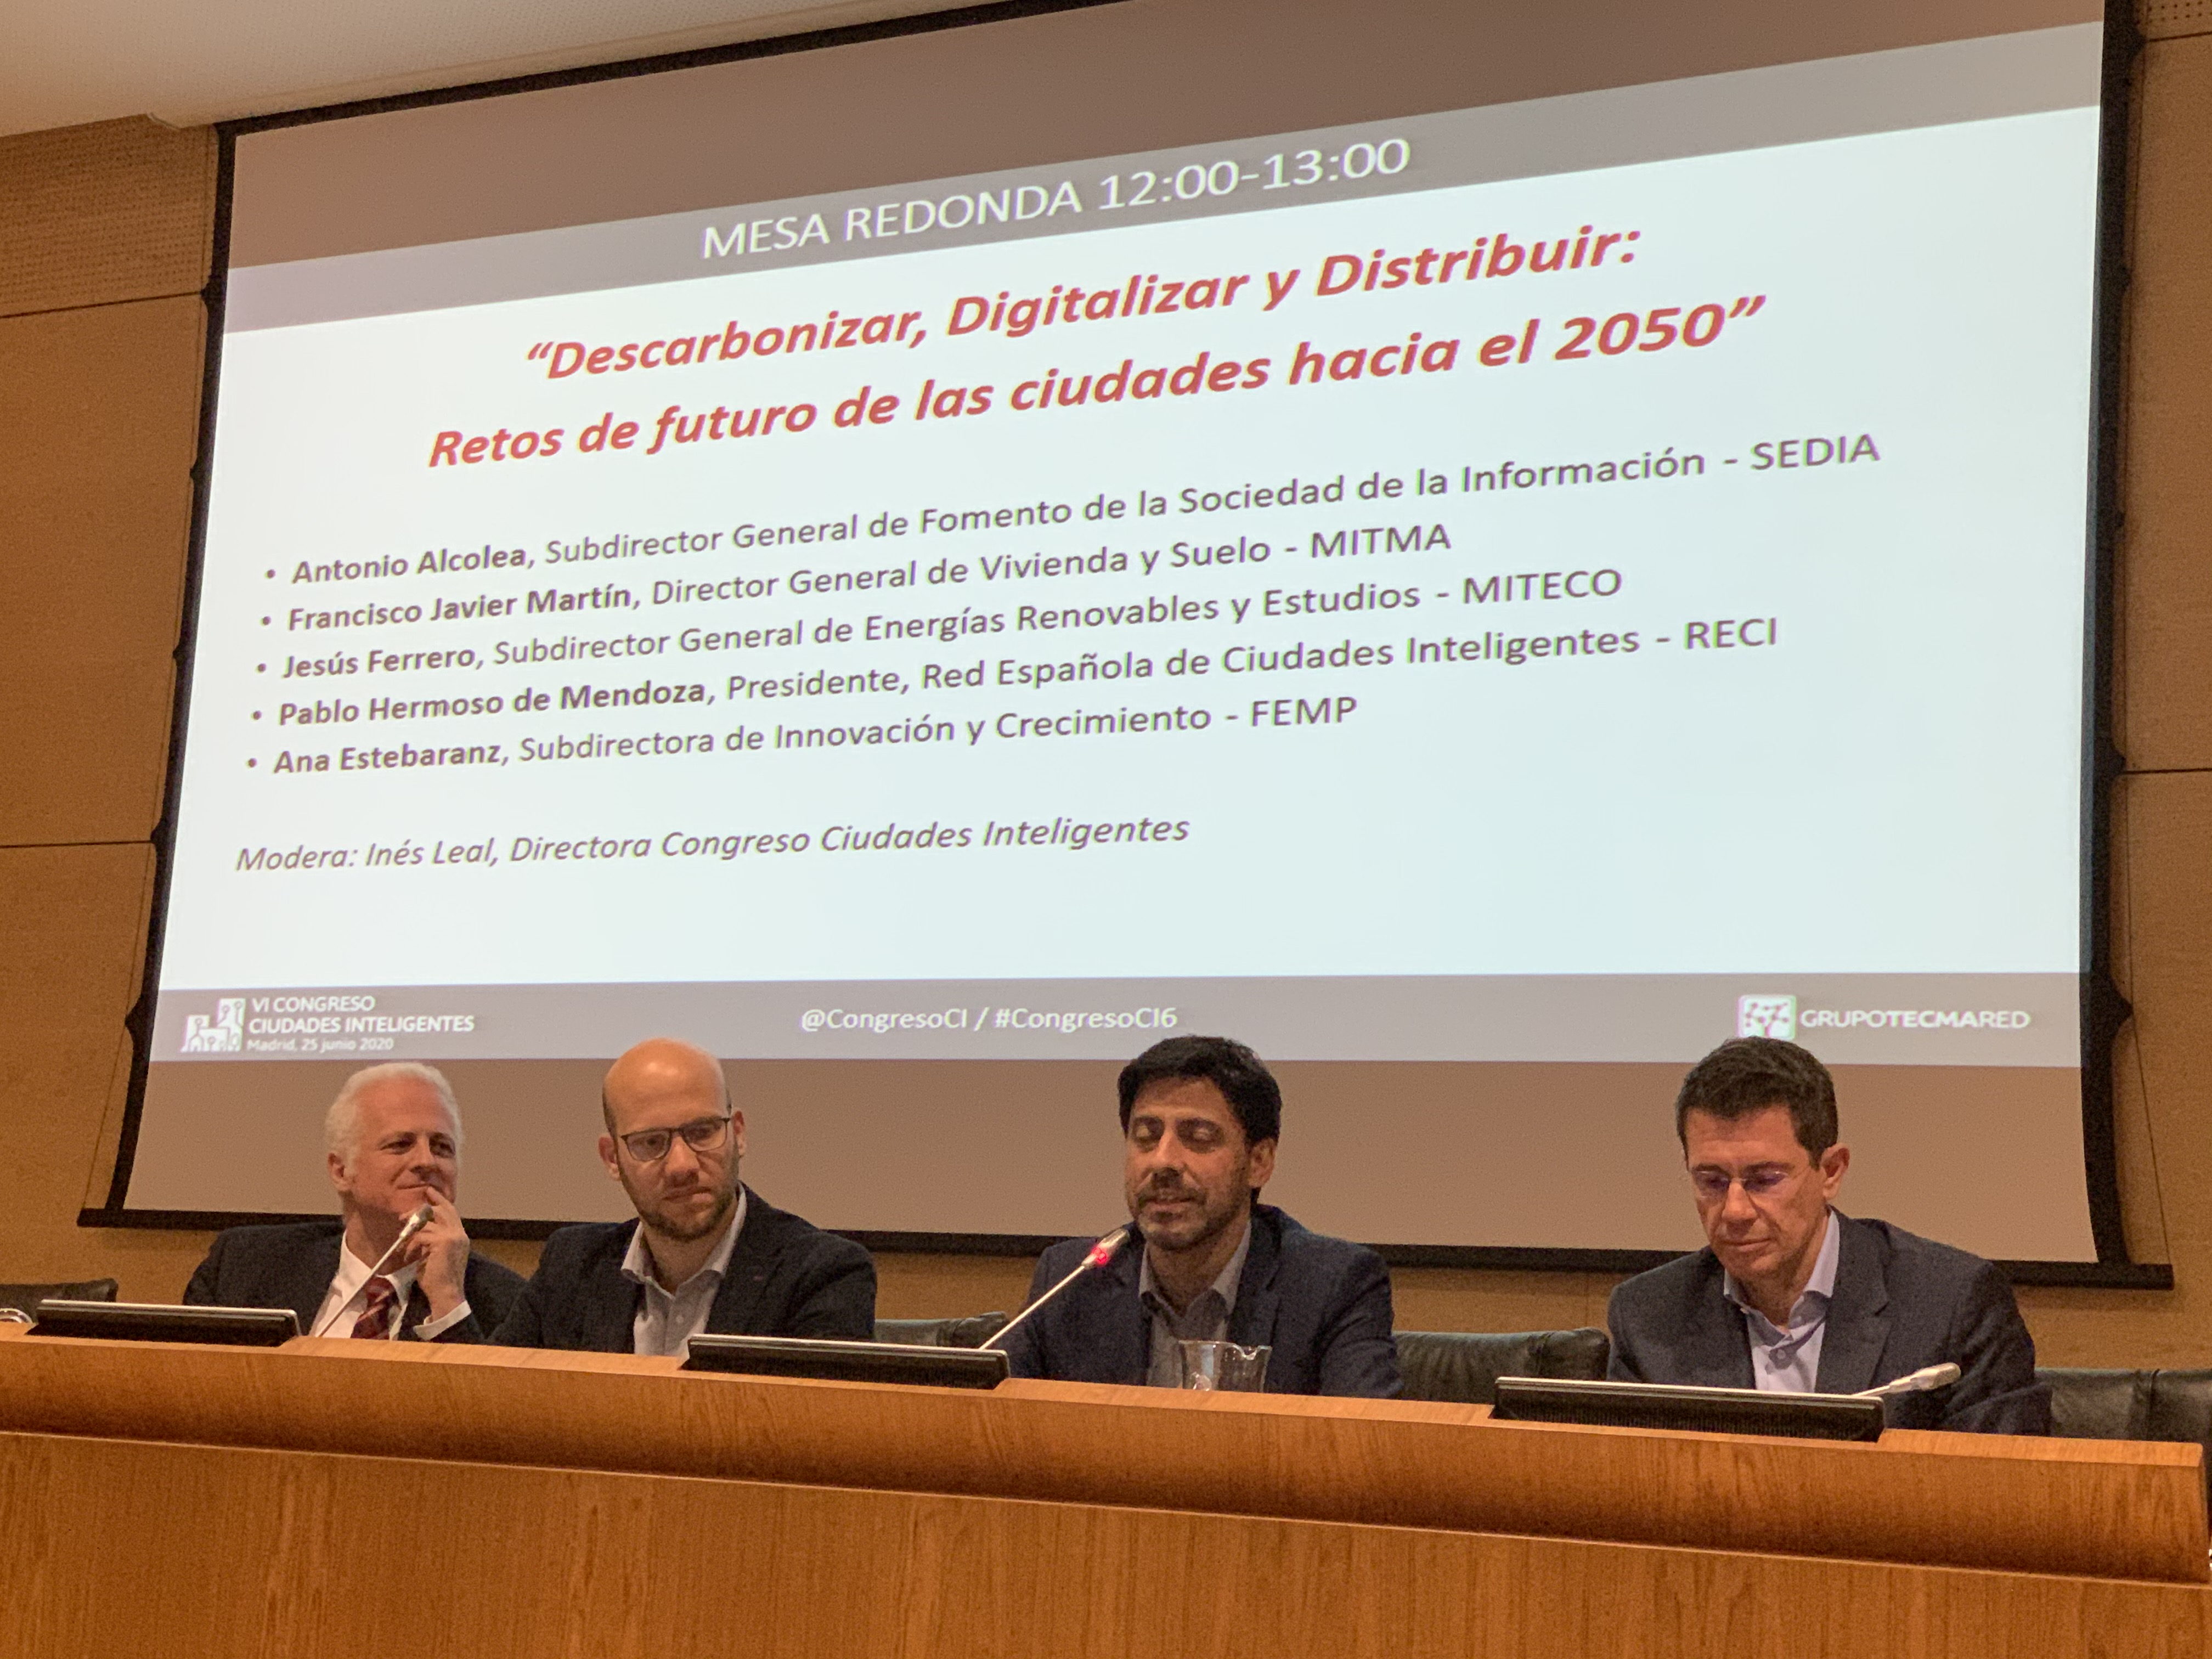 El alcalde de Logroño participa en la mesa redonda sobre los retos de futuro de las ciudades organizada por la Secretaría de Estado de Digitalización